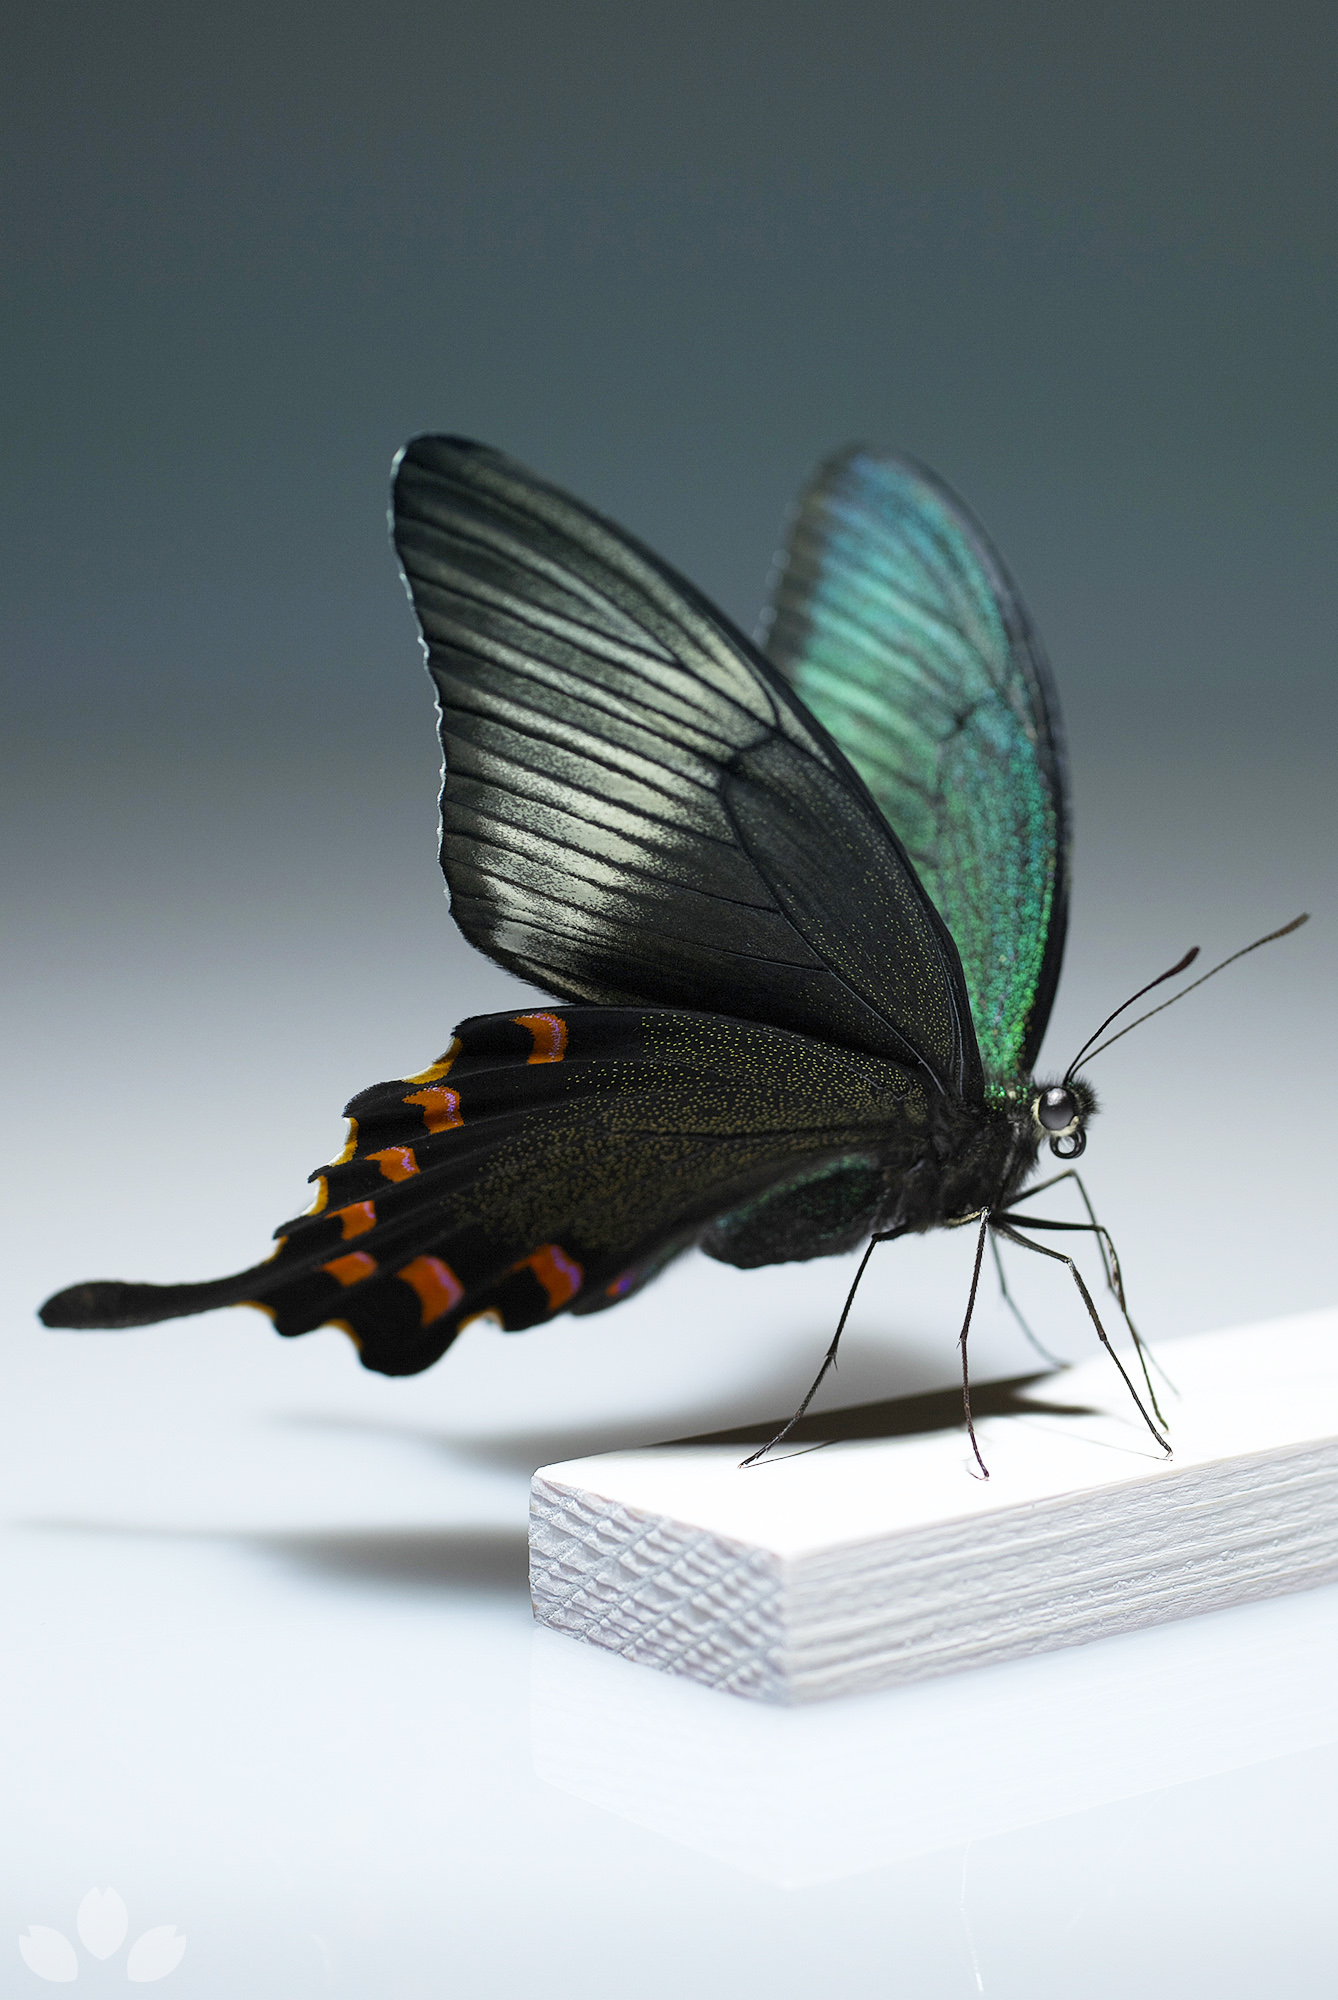 山﨑 理 Yamazaki Osamu チョウの標本を作っています 虫ピンは使いません こちらはハチジョウカラスアゲハ この角度から見ると緑 赤 黒のコントラストが美しいです Specimen Of Papilio Bianor Hachijonis Matsumura 立体展翅 Butterflyspecimen